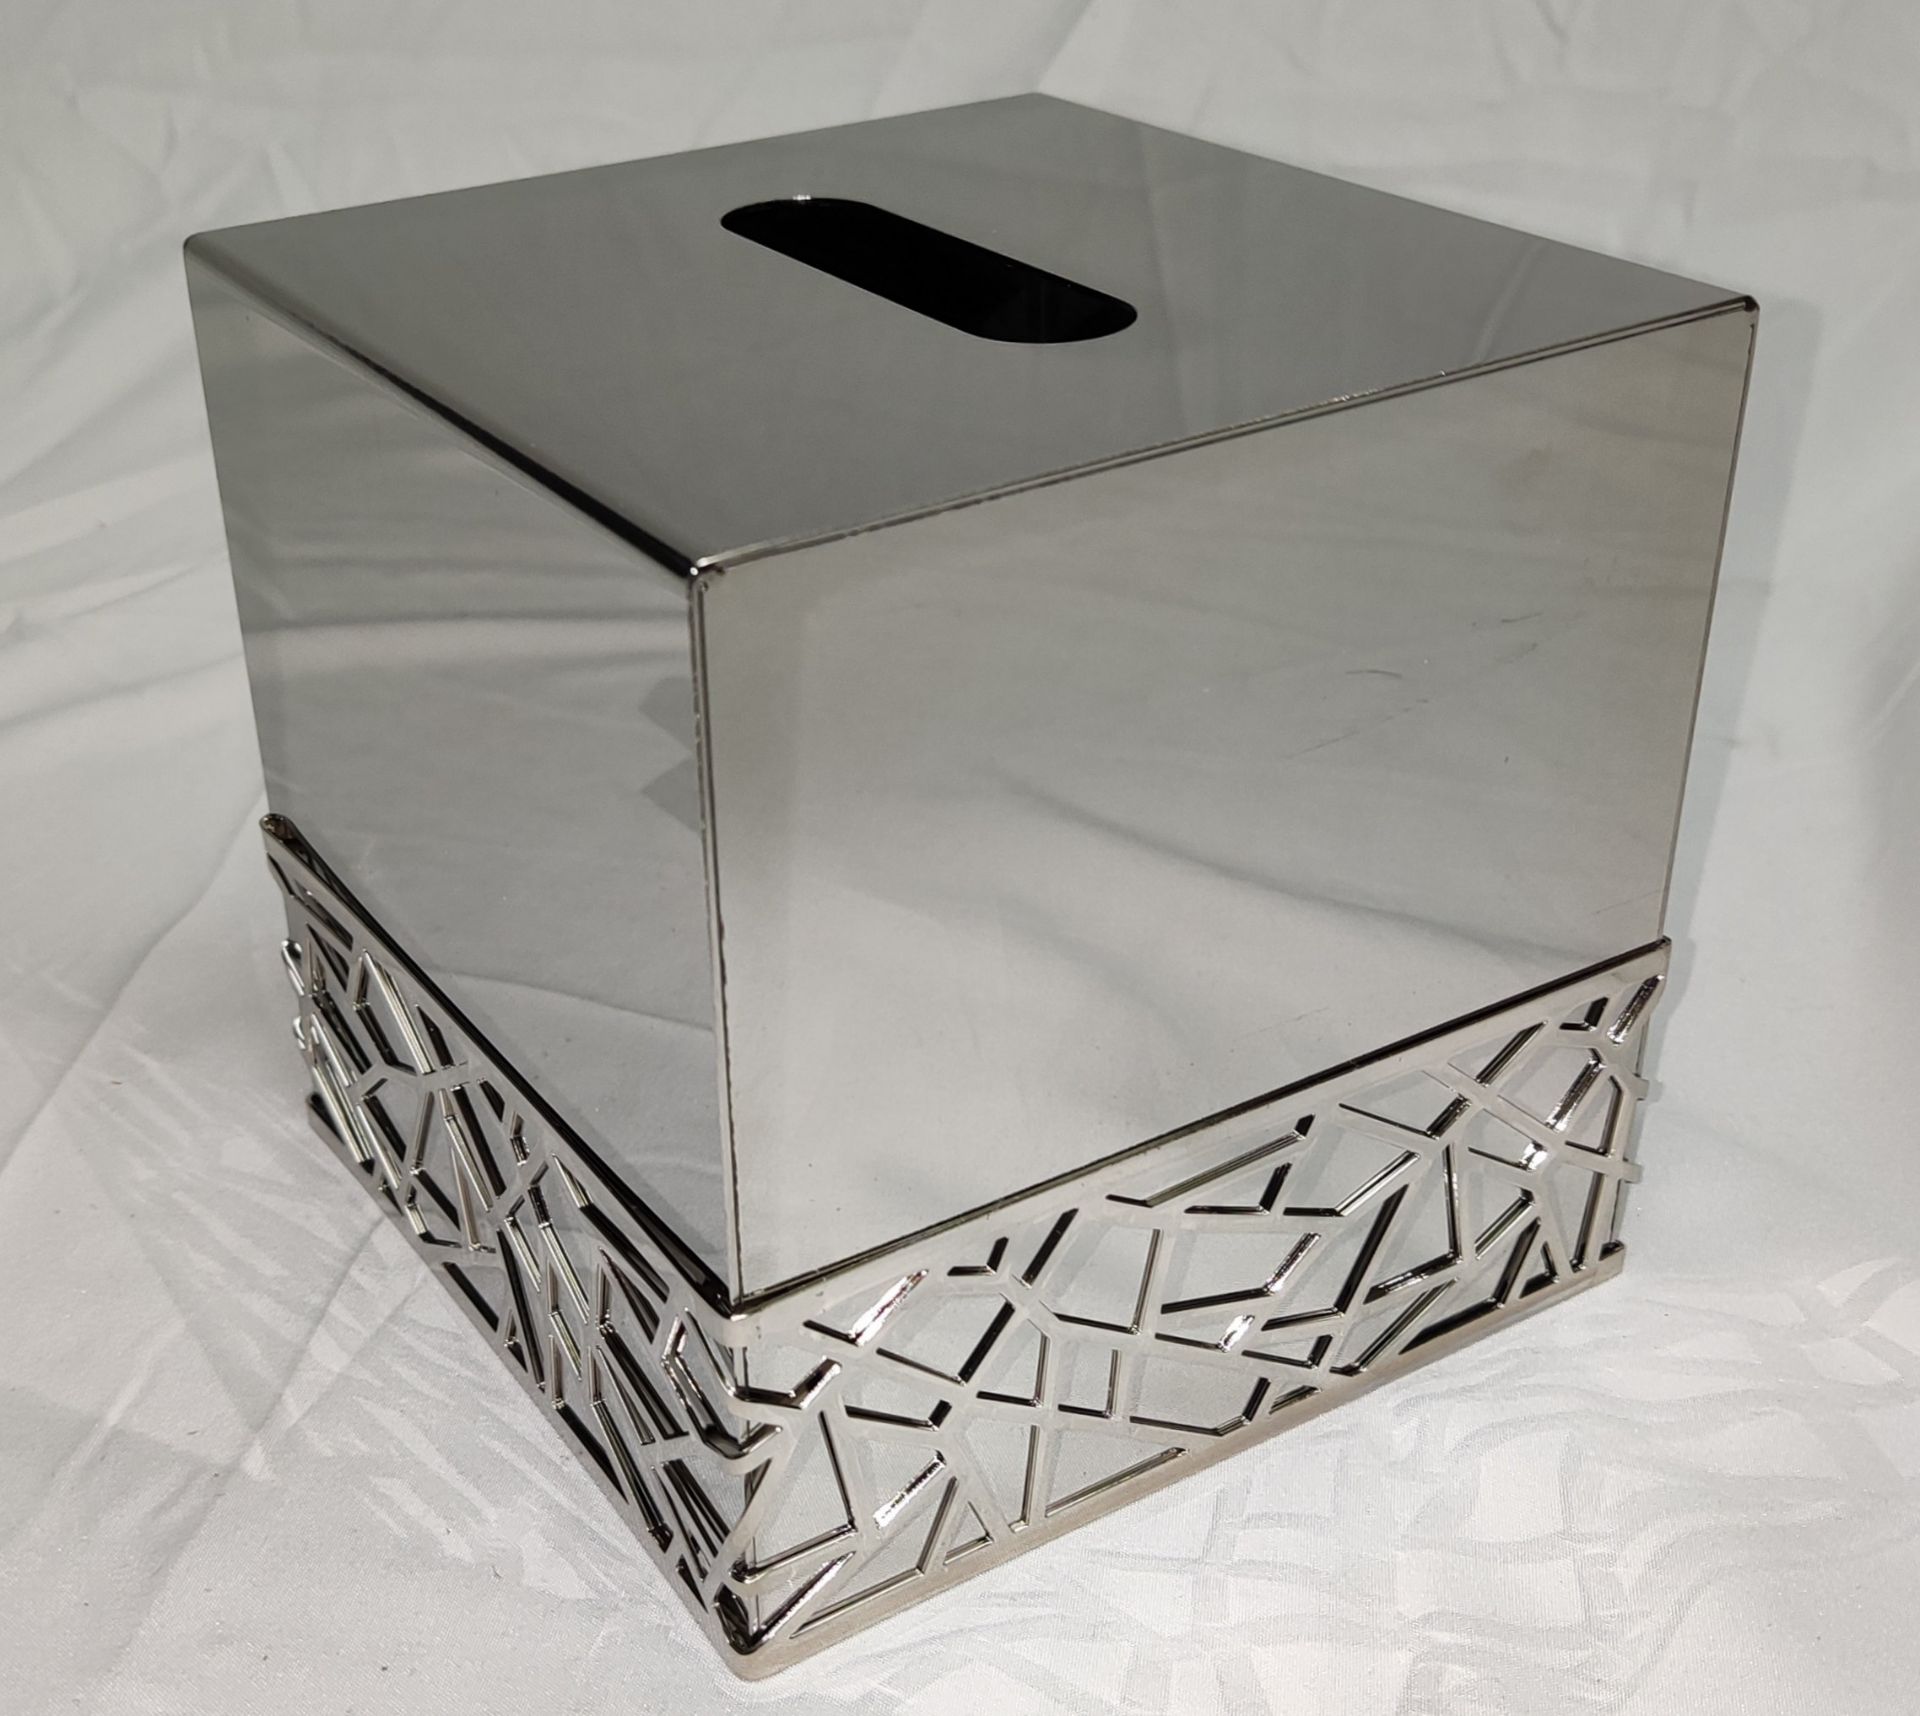 1 x VILLARI Hiroito Square Tissue Box - Chrome Plated - Boxed - Original RRP £529 - Ref: 6125321/ - Image 11 of 17